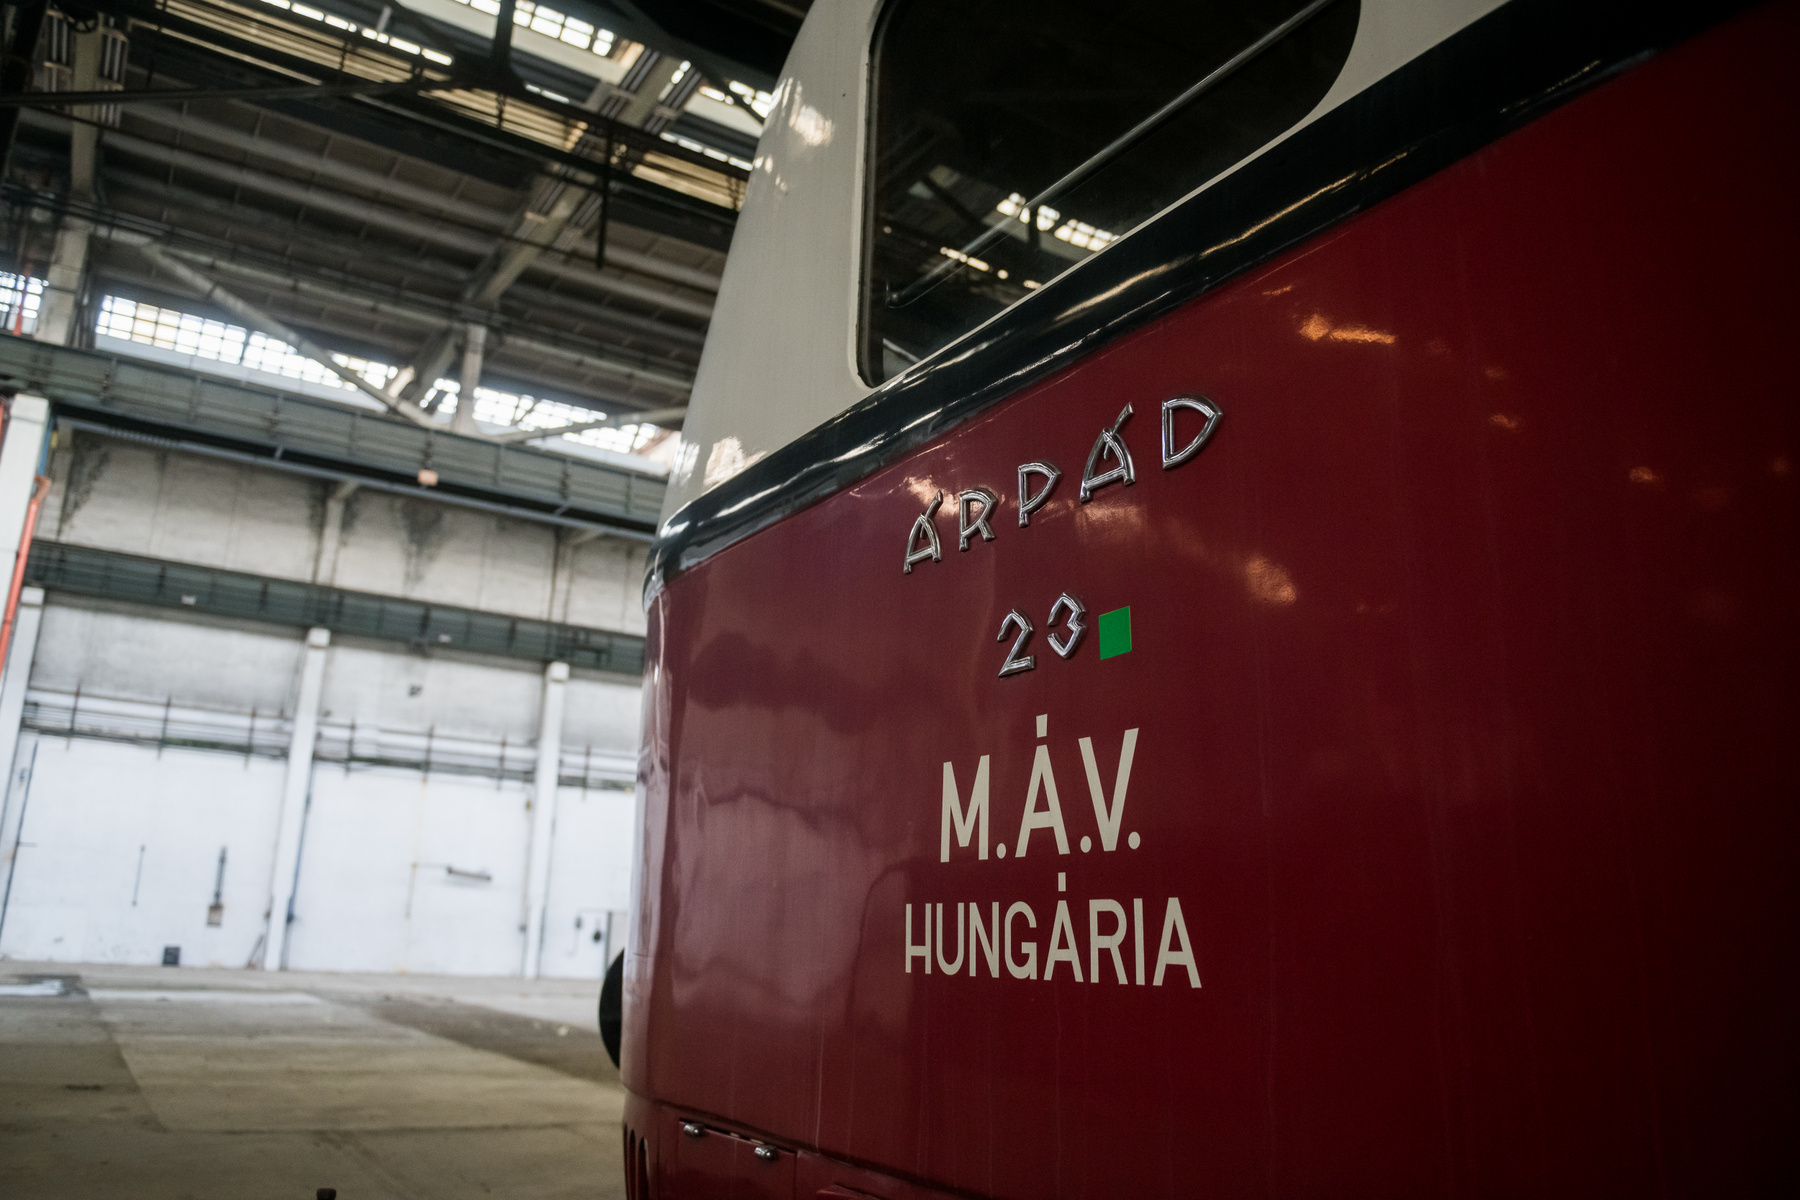 A gyorssínautóbusz kevesebb mint 3 óra alatt tette meg a Budapest és Bécs közötti utat.